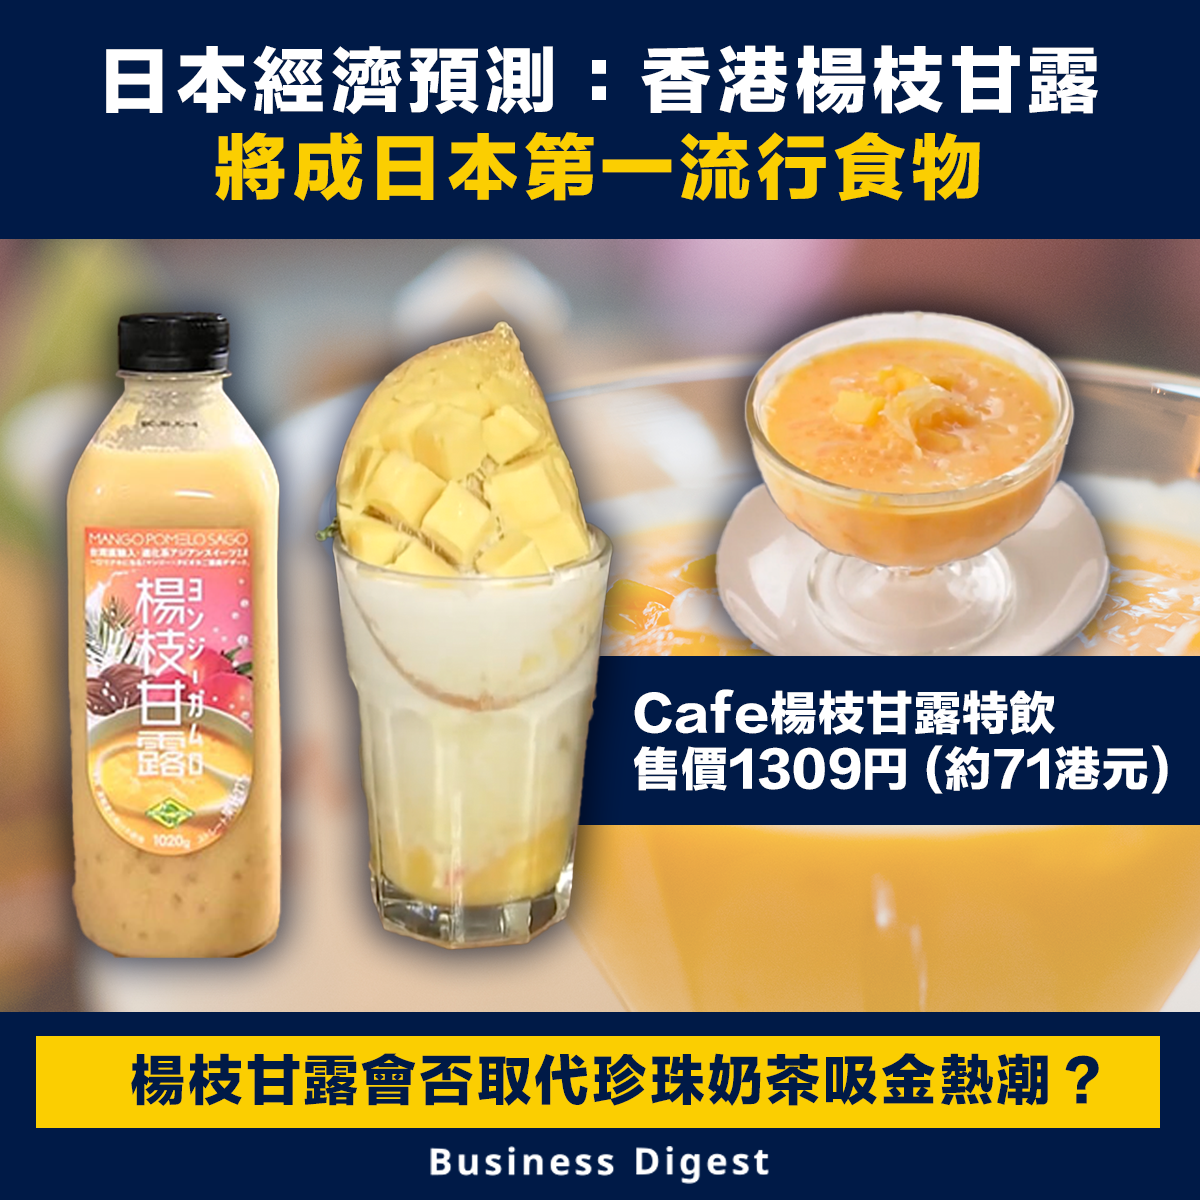 日本經濟預測：香港楊枝甘露將成第一流行食物